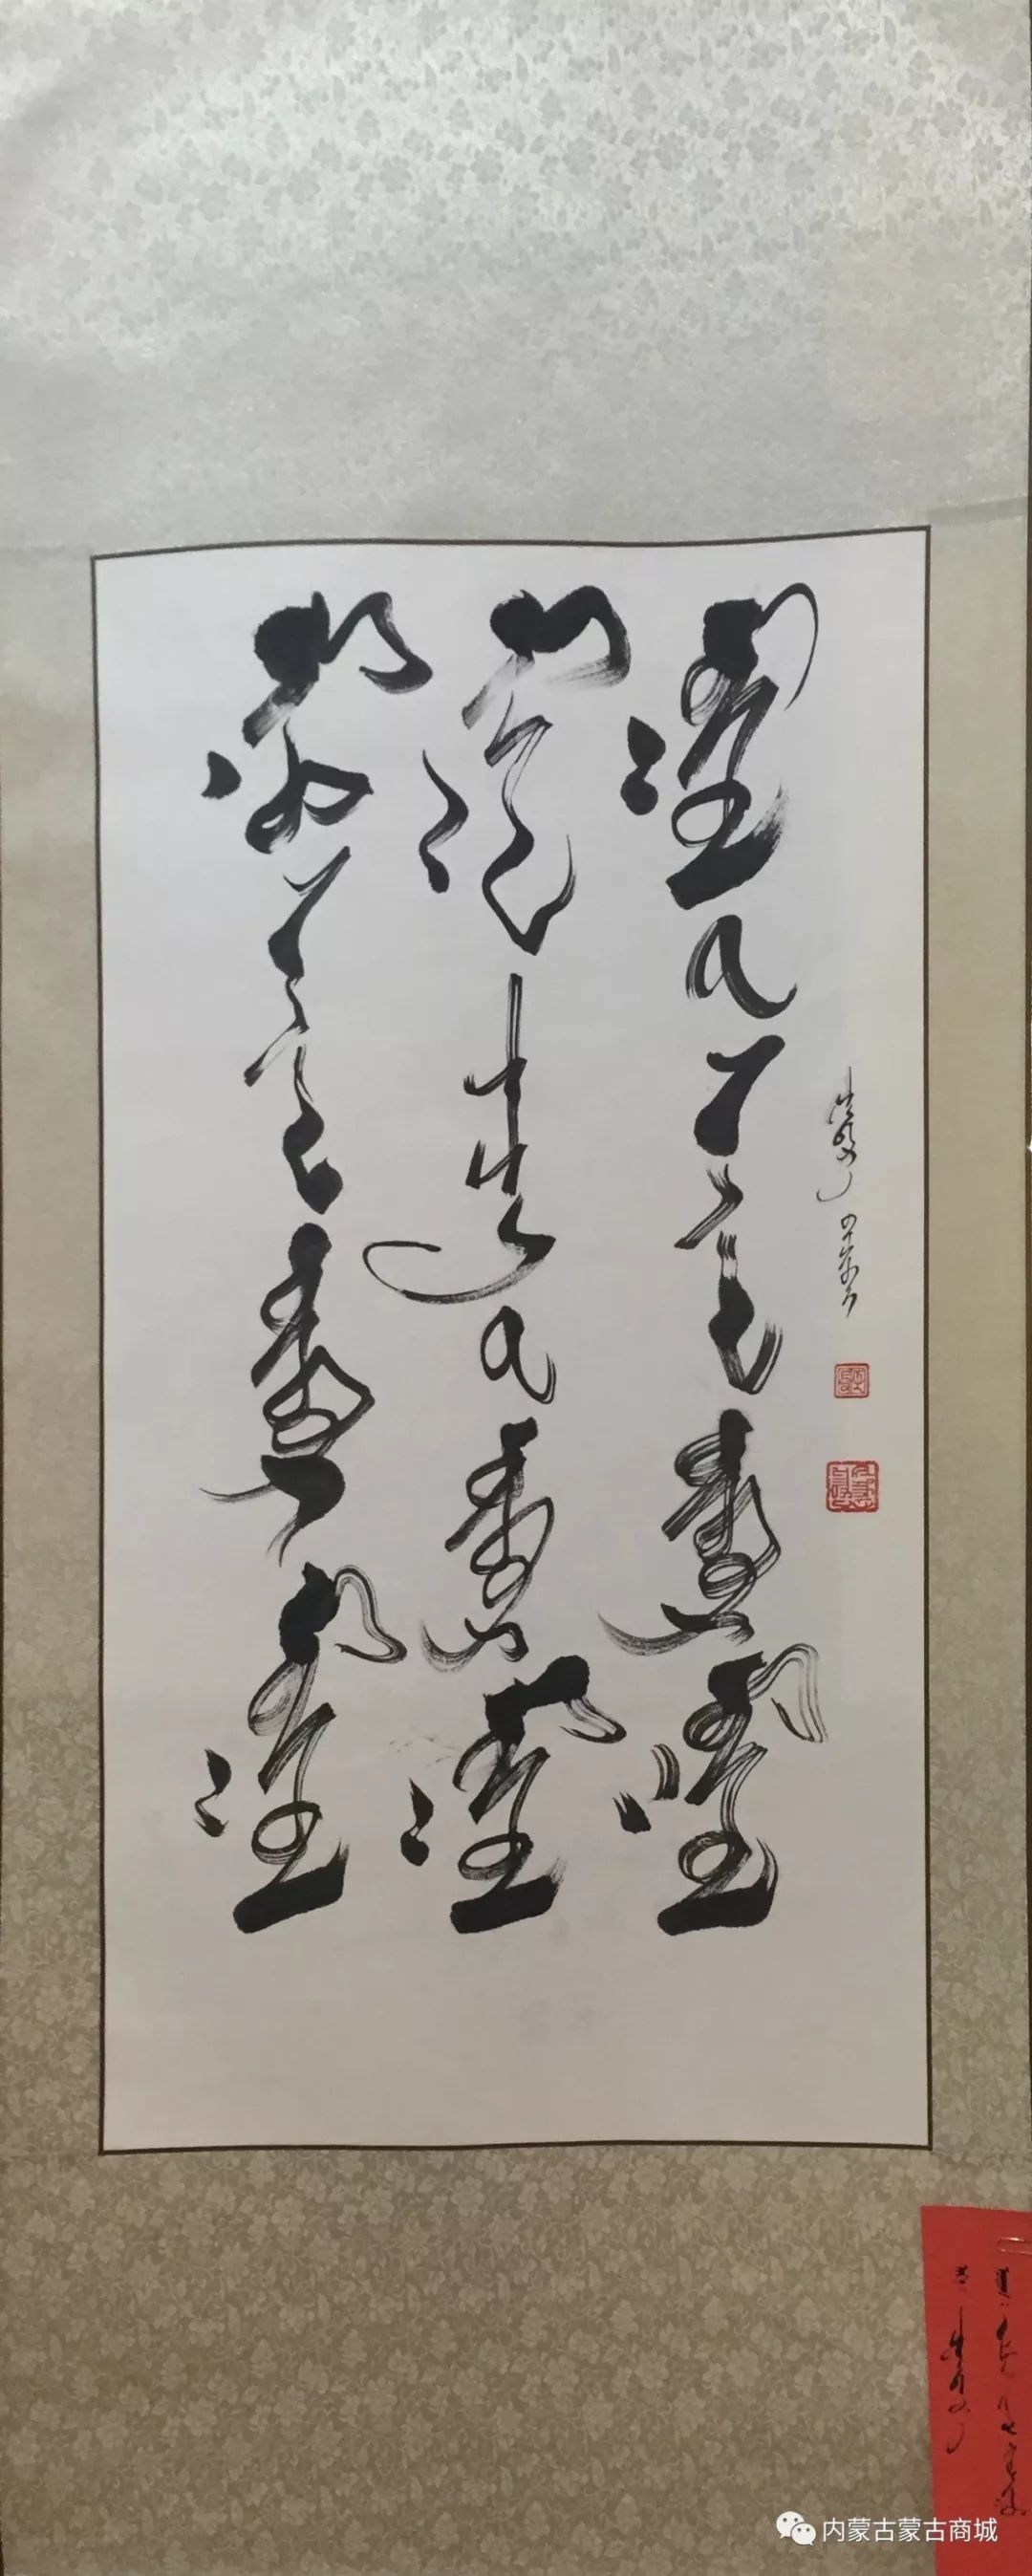 【第五期】蒙古文书法作品 第10张